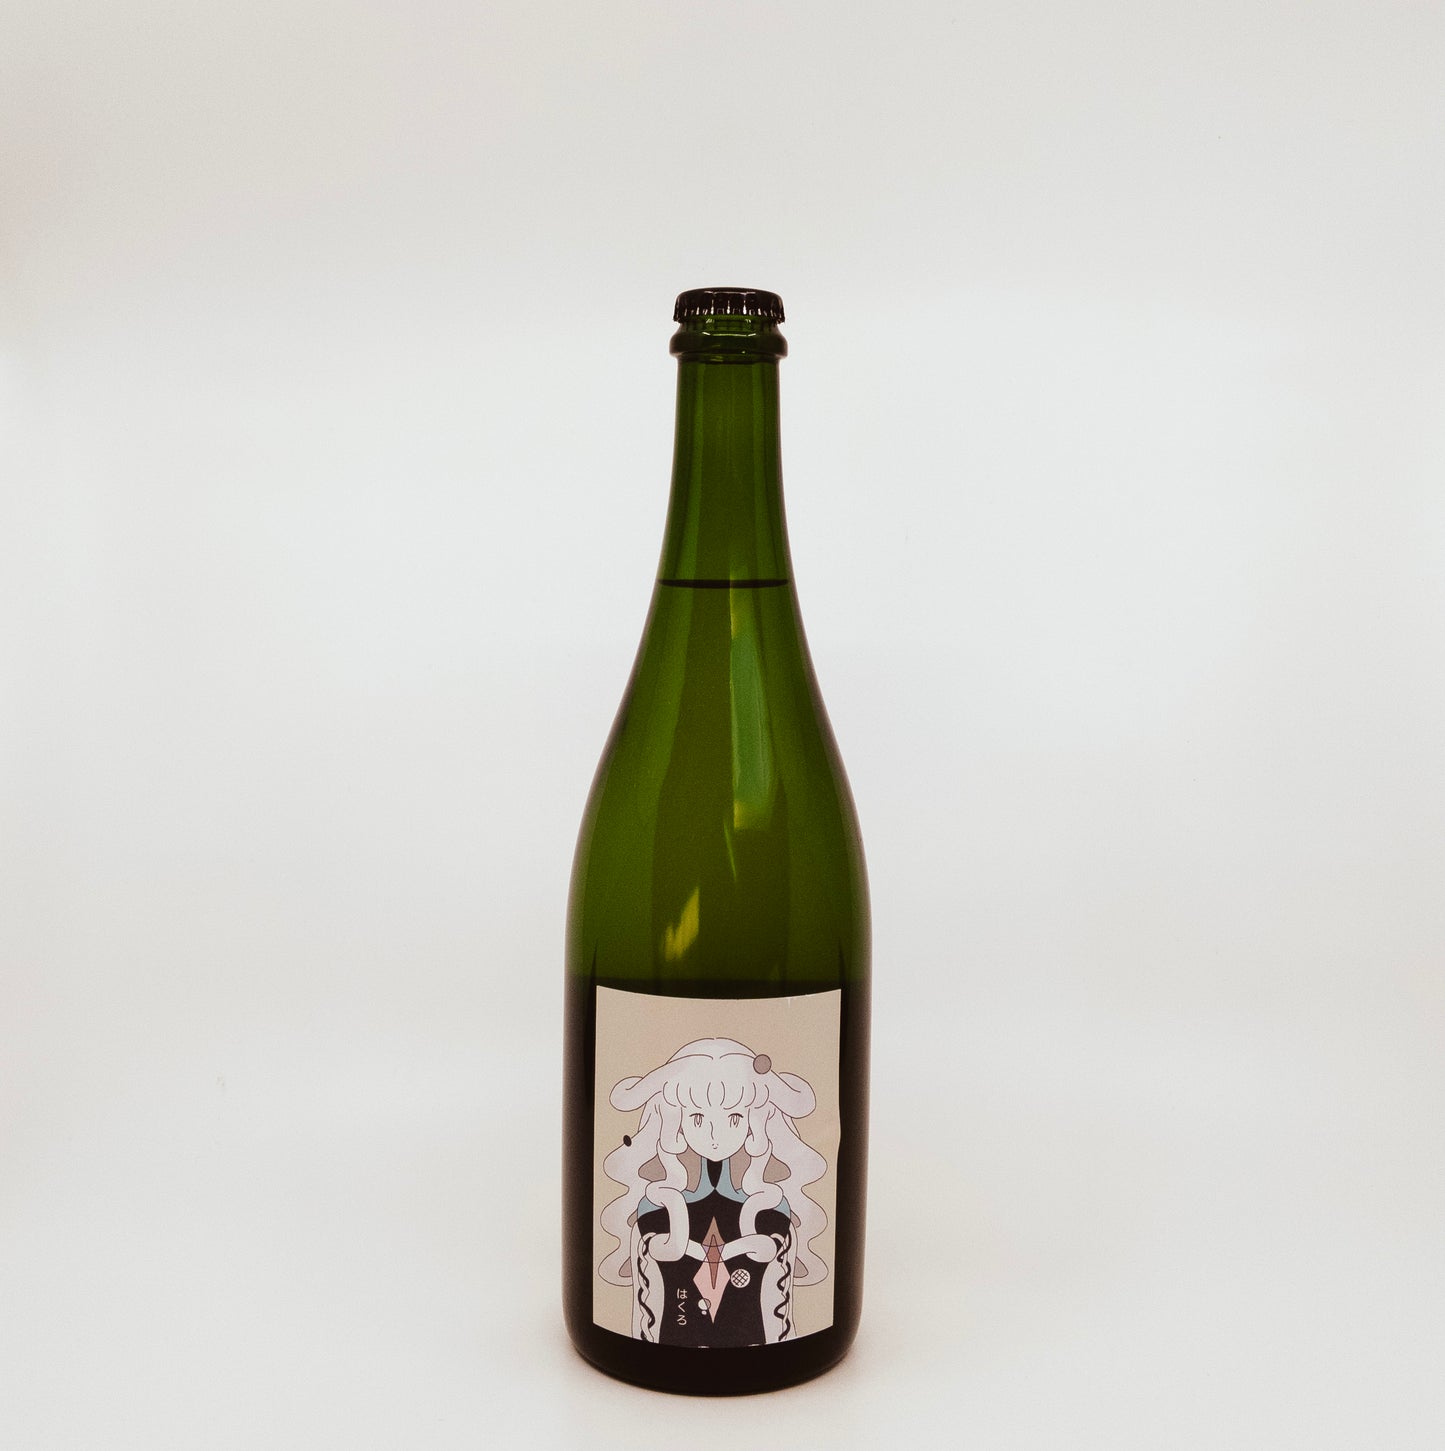 Les Vins Vivants Hakuro Nagano Cider (2020)